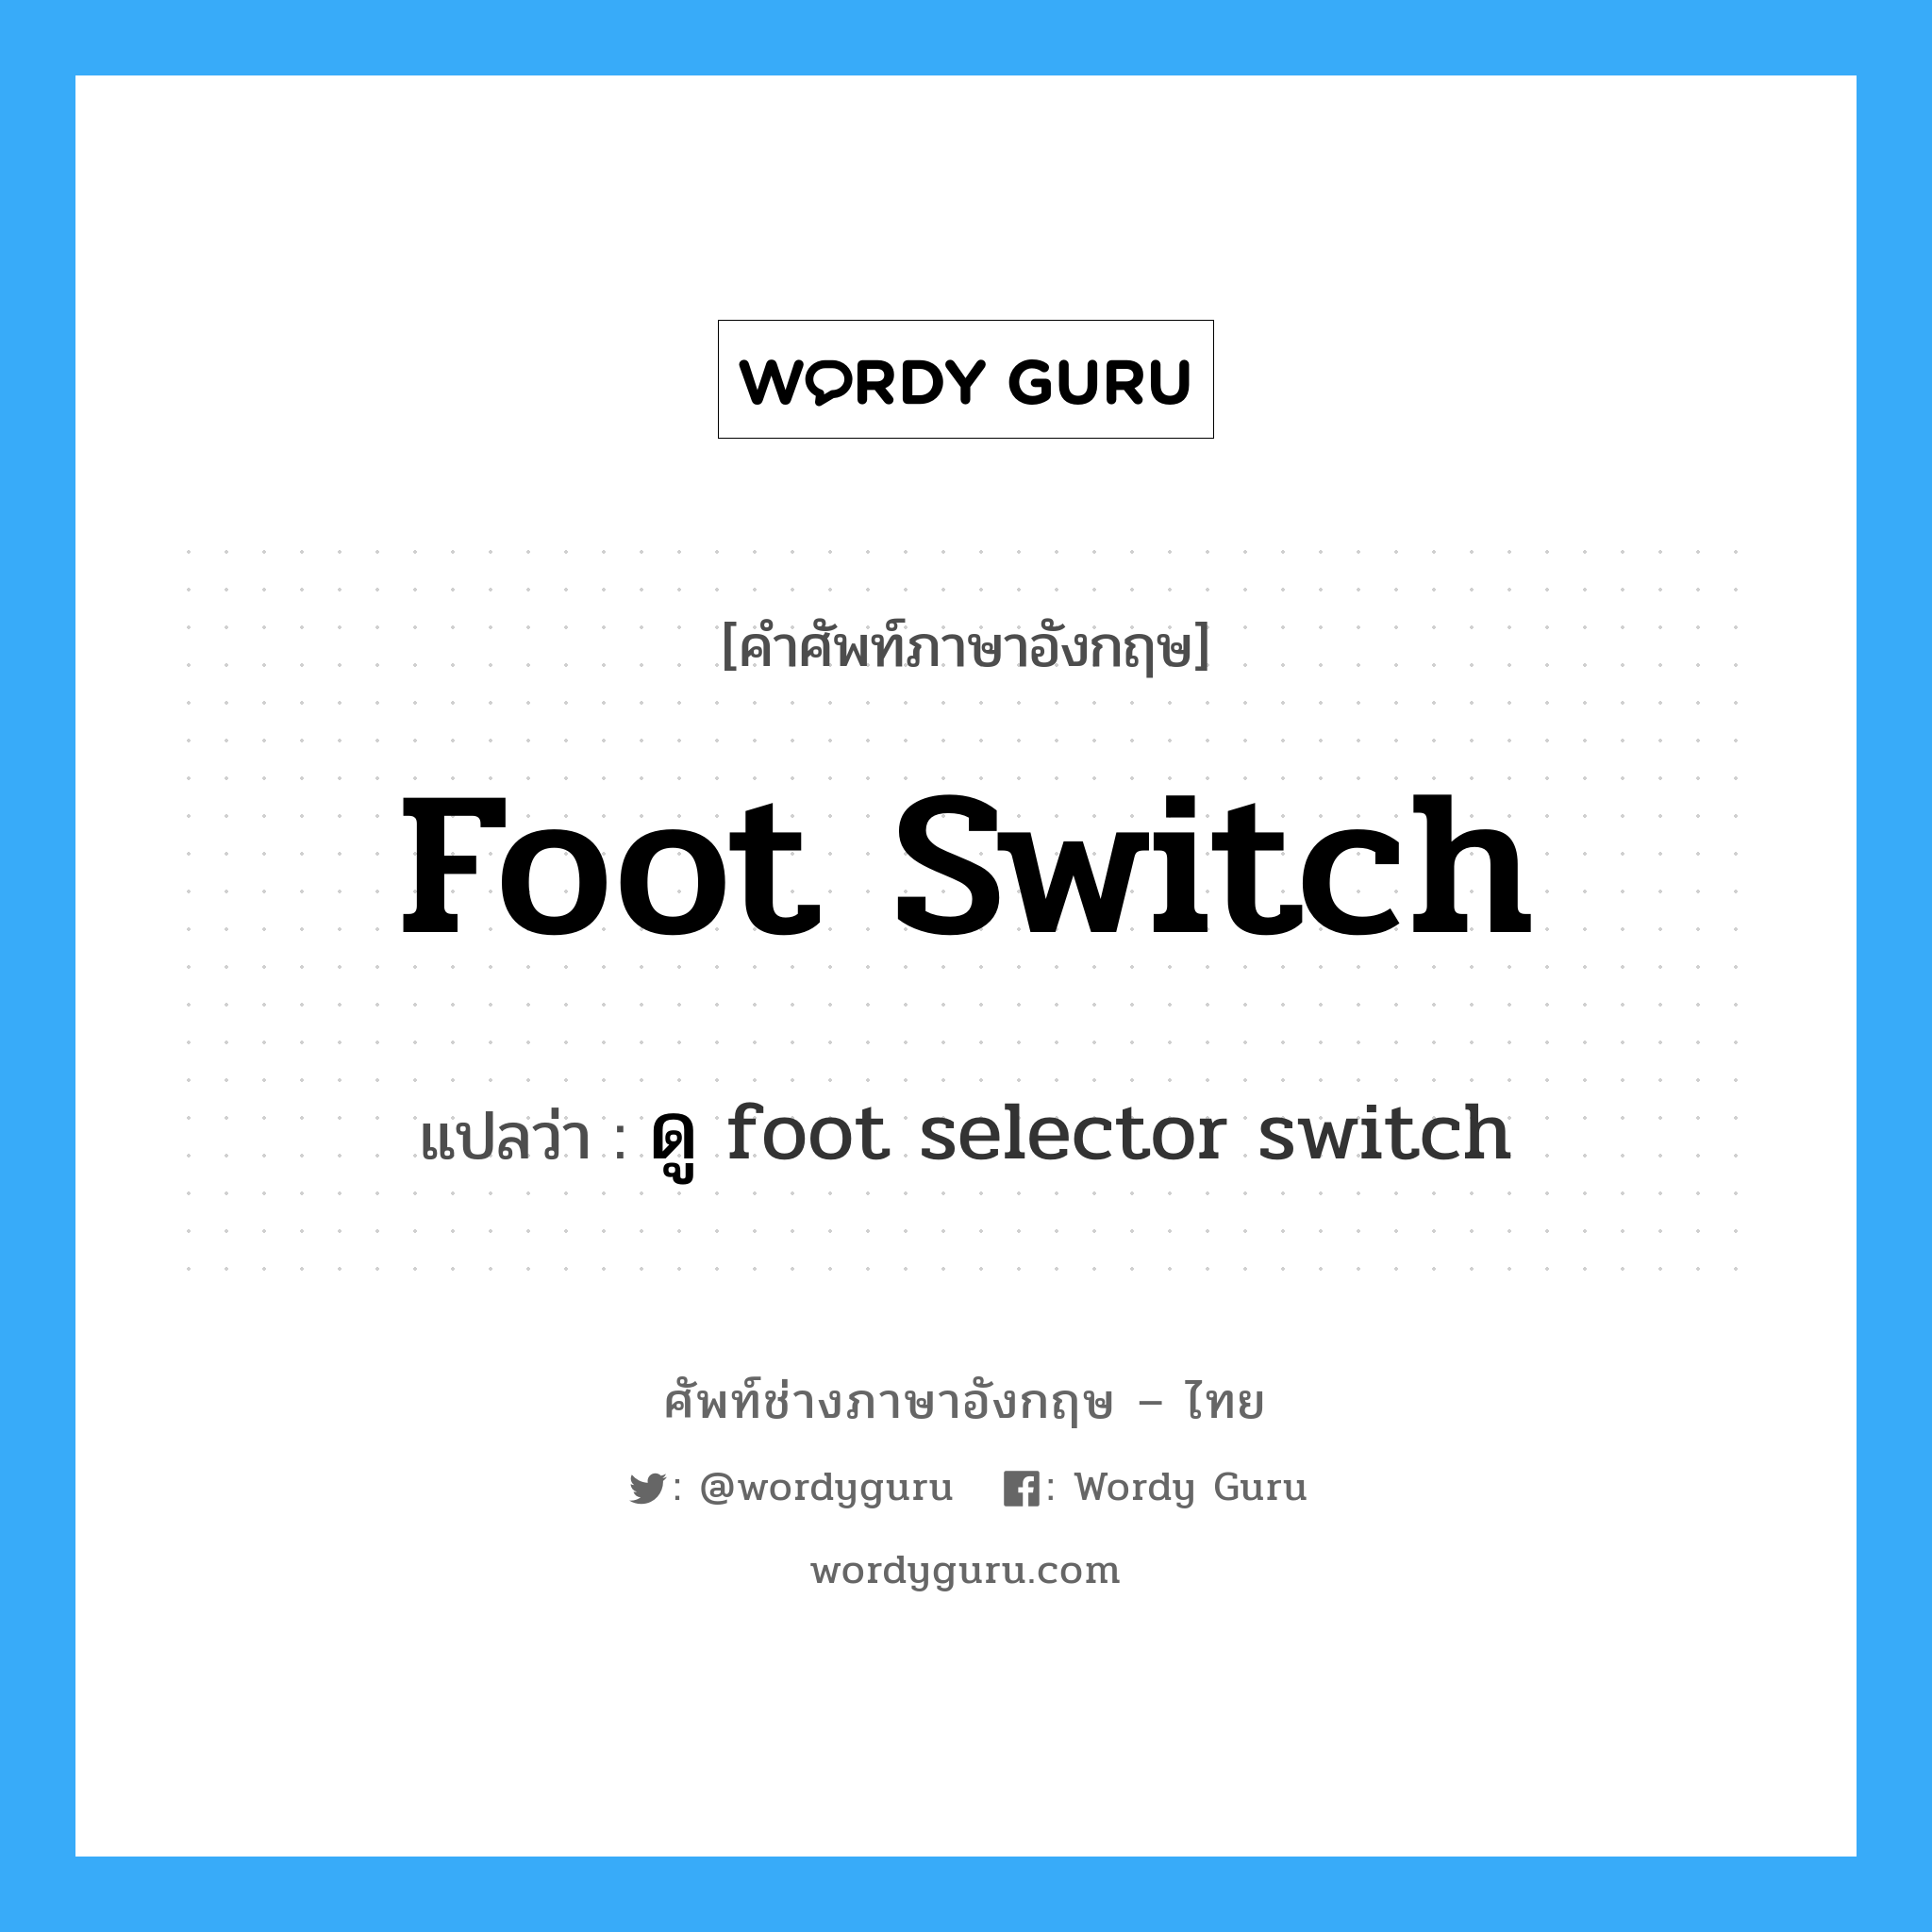 foot switch แปลว่า?, คำศัพท์ช่างภาษาอังกฤษ - ไทย foot switch คำศัพท์ภาษาอังกฤษ foot switch แปลว่า ดู foot selector switch